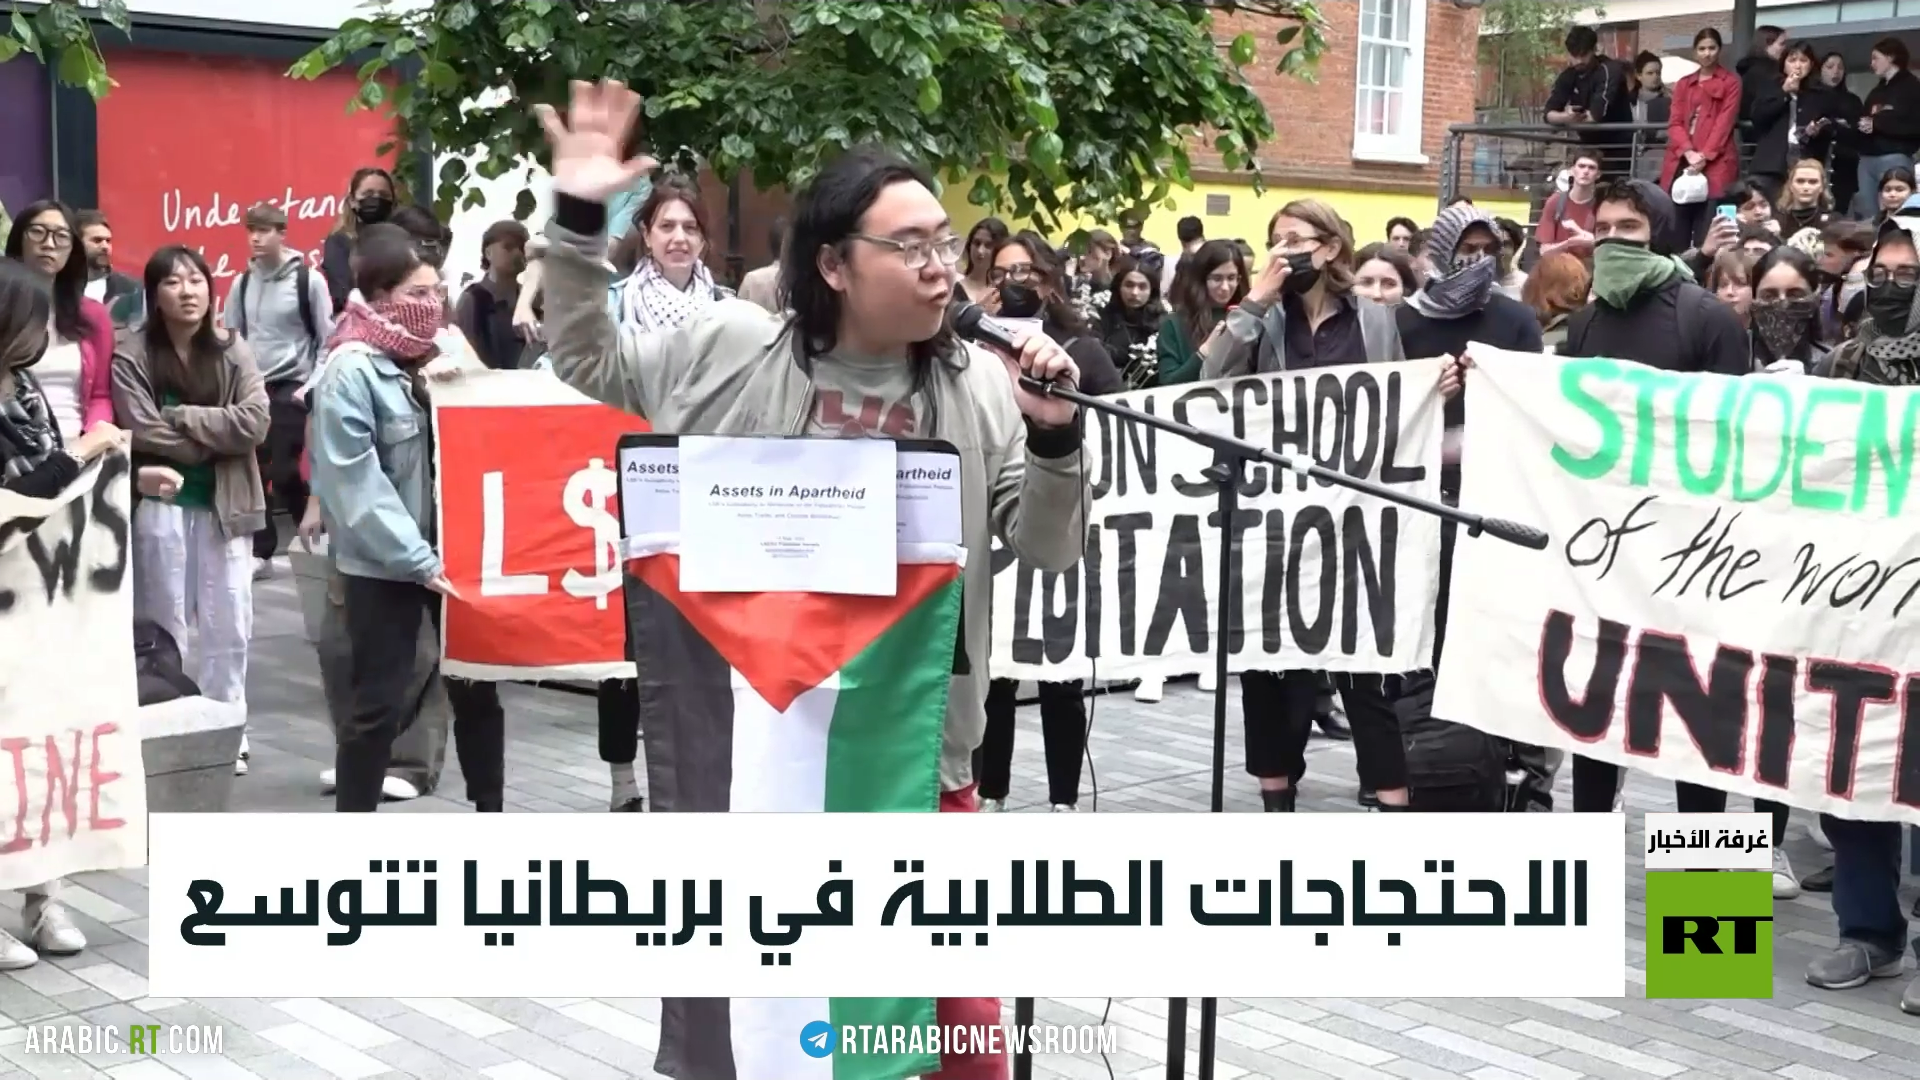 الاحتجاجات الطلابية في بريطانيا تتوسع